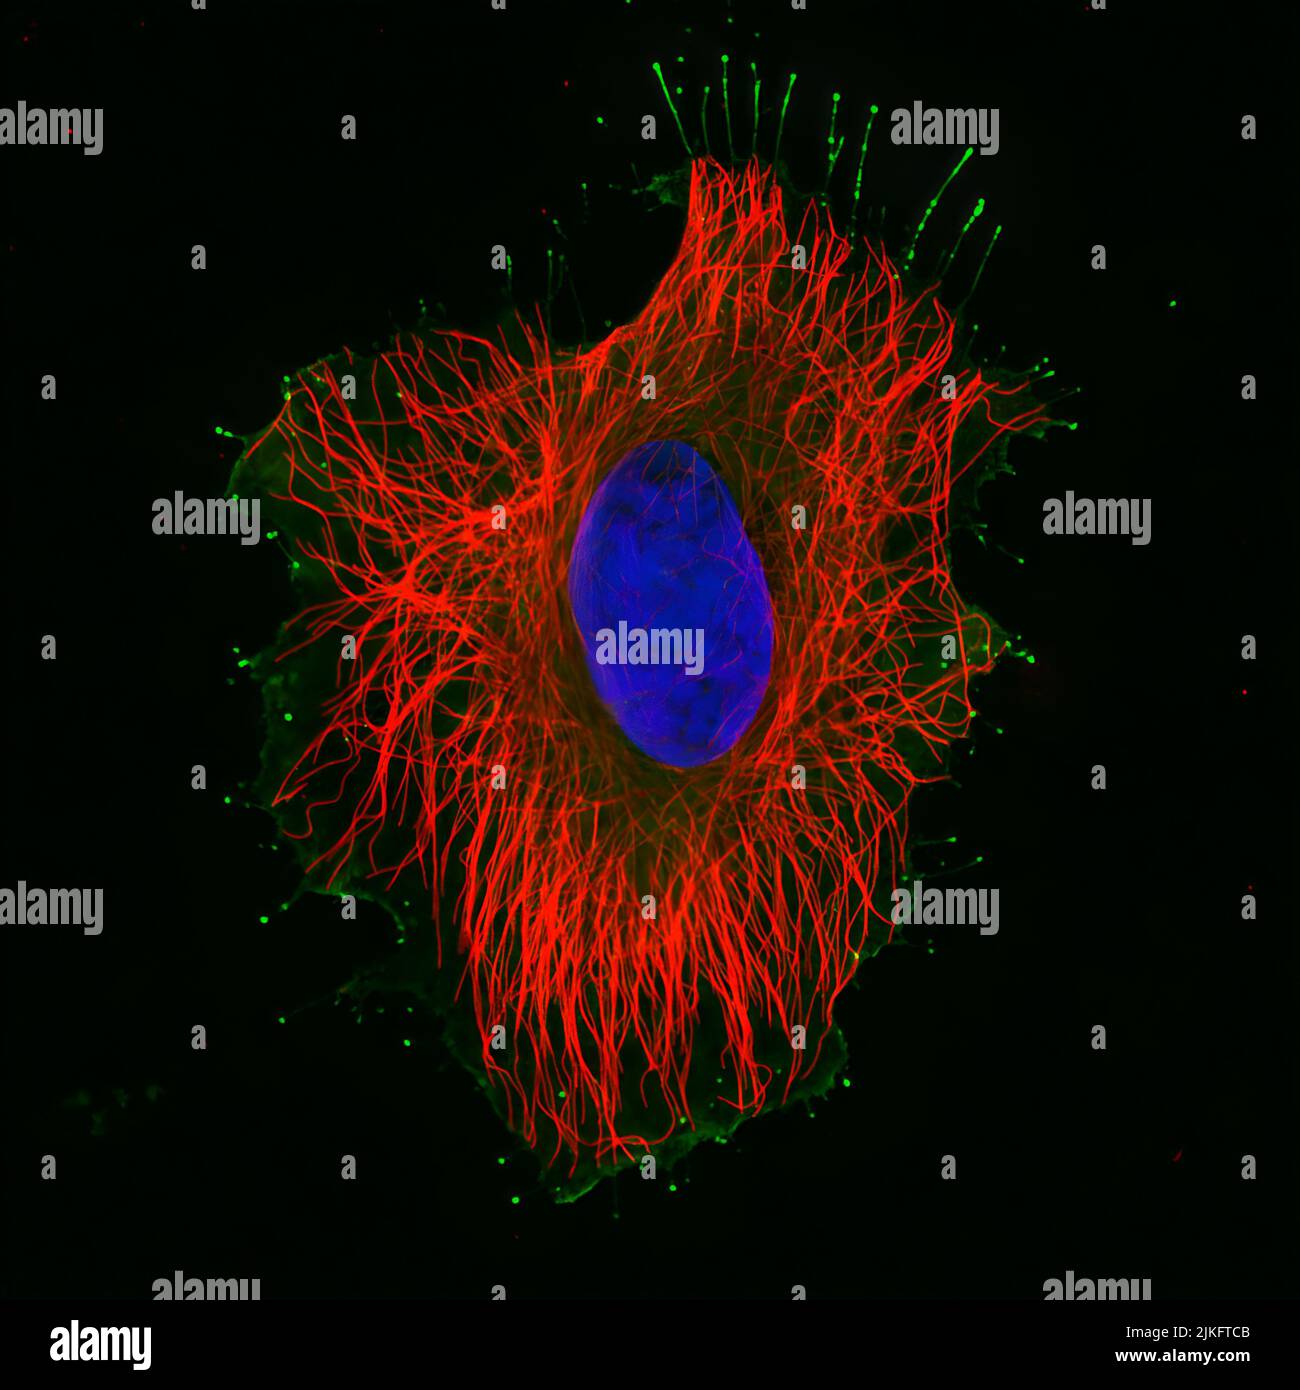 Les microtubules (rouges) et les filaments d'actine fournissent un support structural à cette cellule HeLa humaine (noyau en bleu). Les moteurs moléculaires comme la myosine 15 (vert), une protéine essentielle à l'audition humaine normale, utilisent des filaments d'actine comme chemin de fer pour transporter des marchandises dans la cellule. Banque D'Images